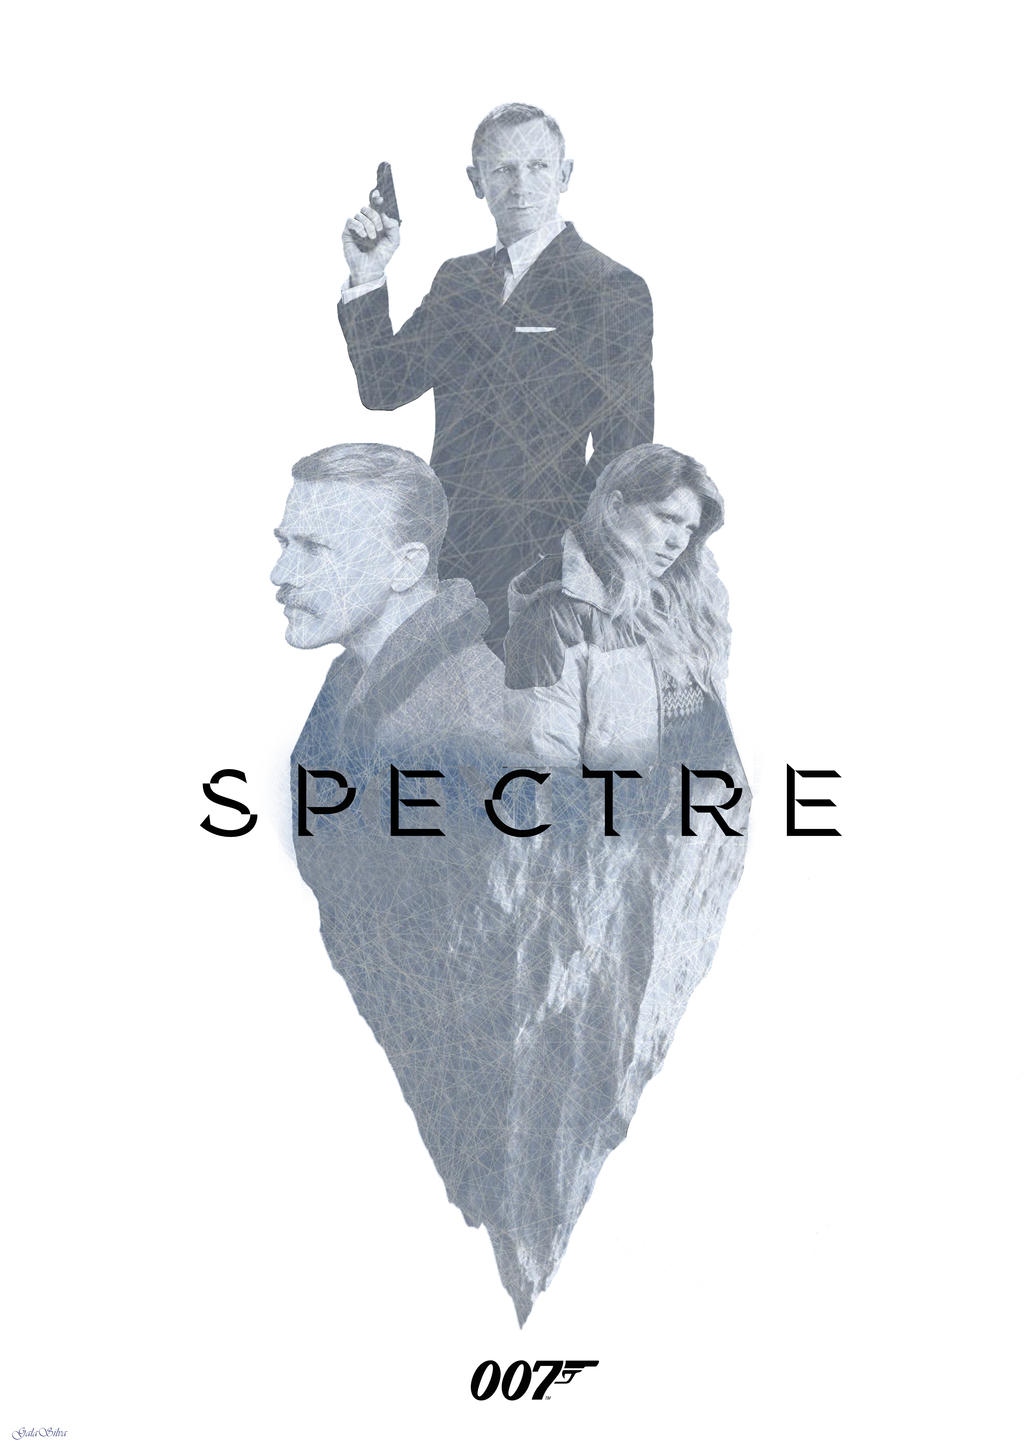 spectre___poster_by_galasilva-d891jvw.jp